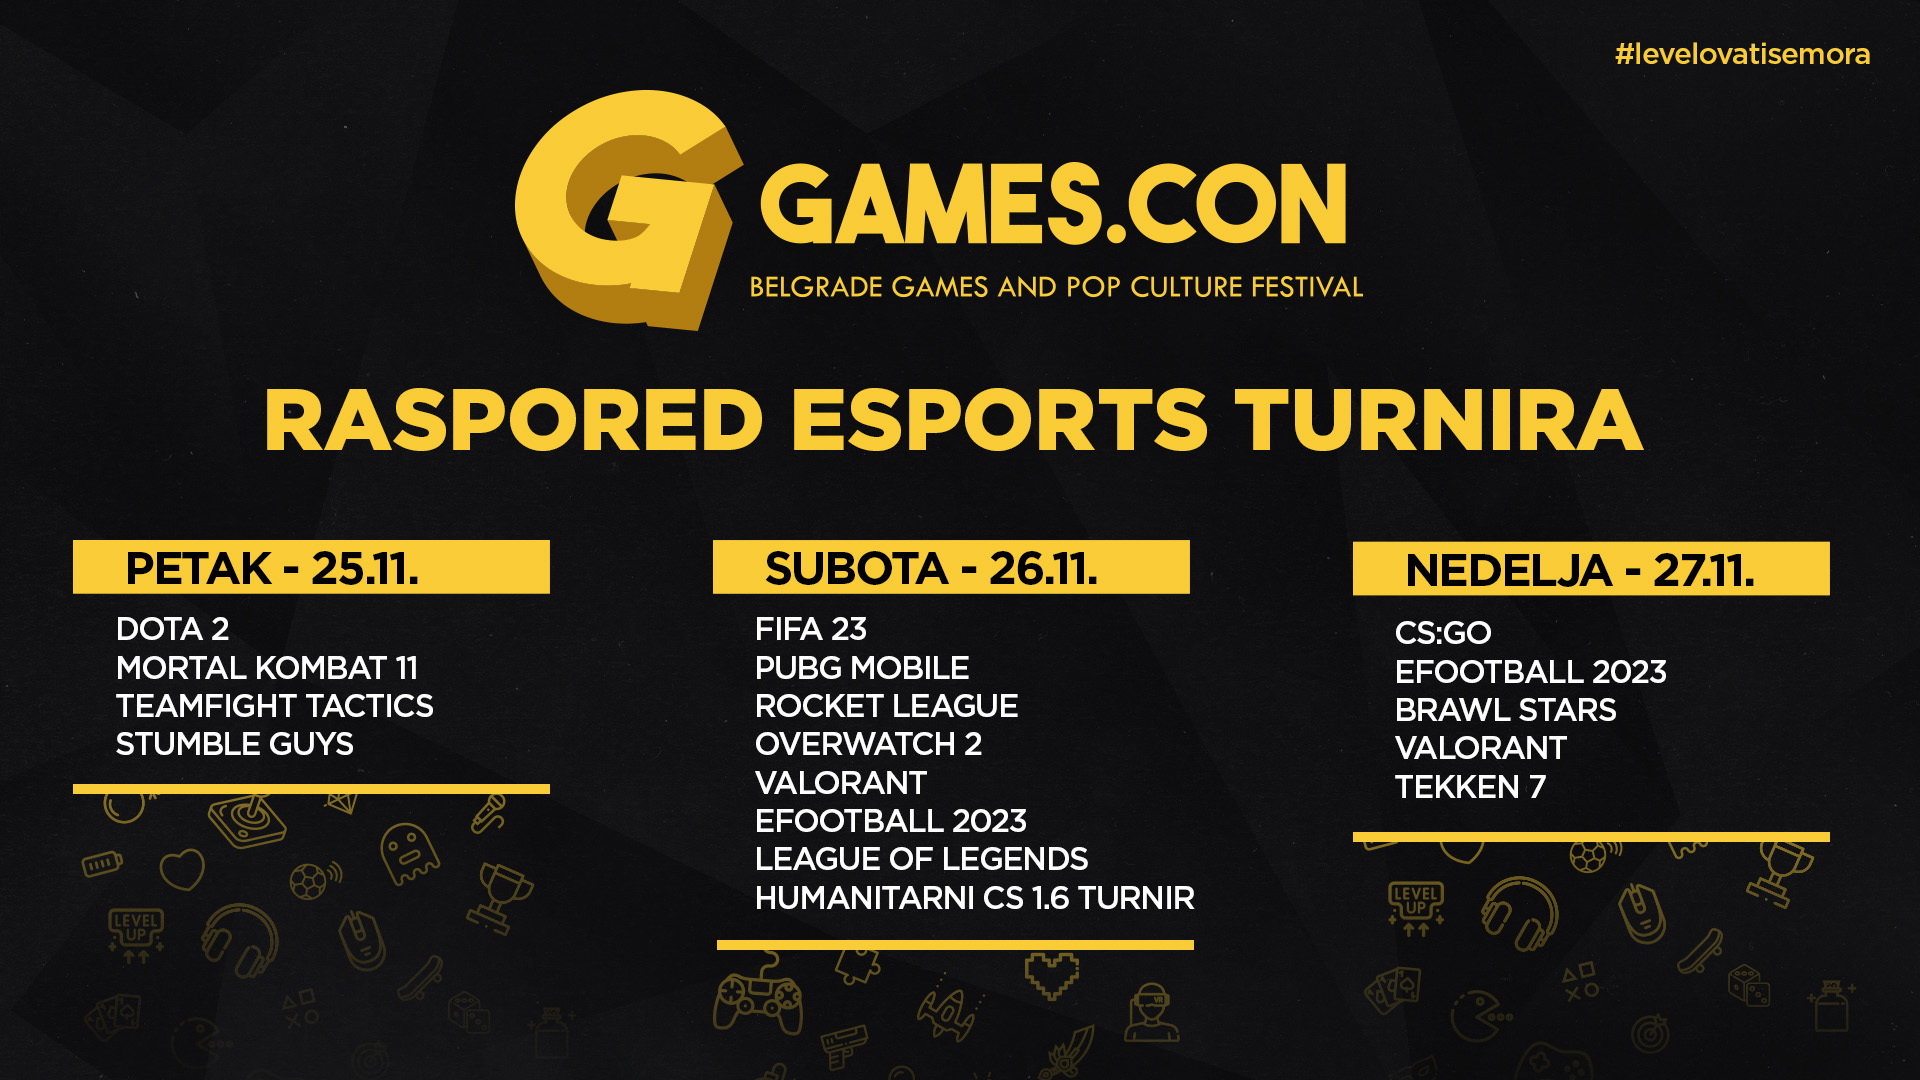 Raspored_esports_gamescon2022